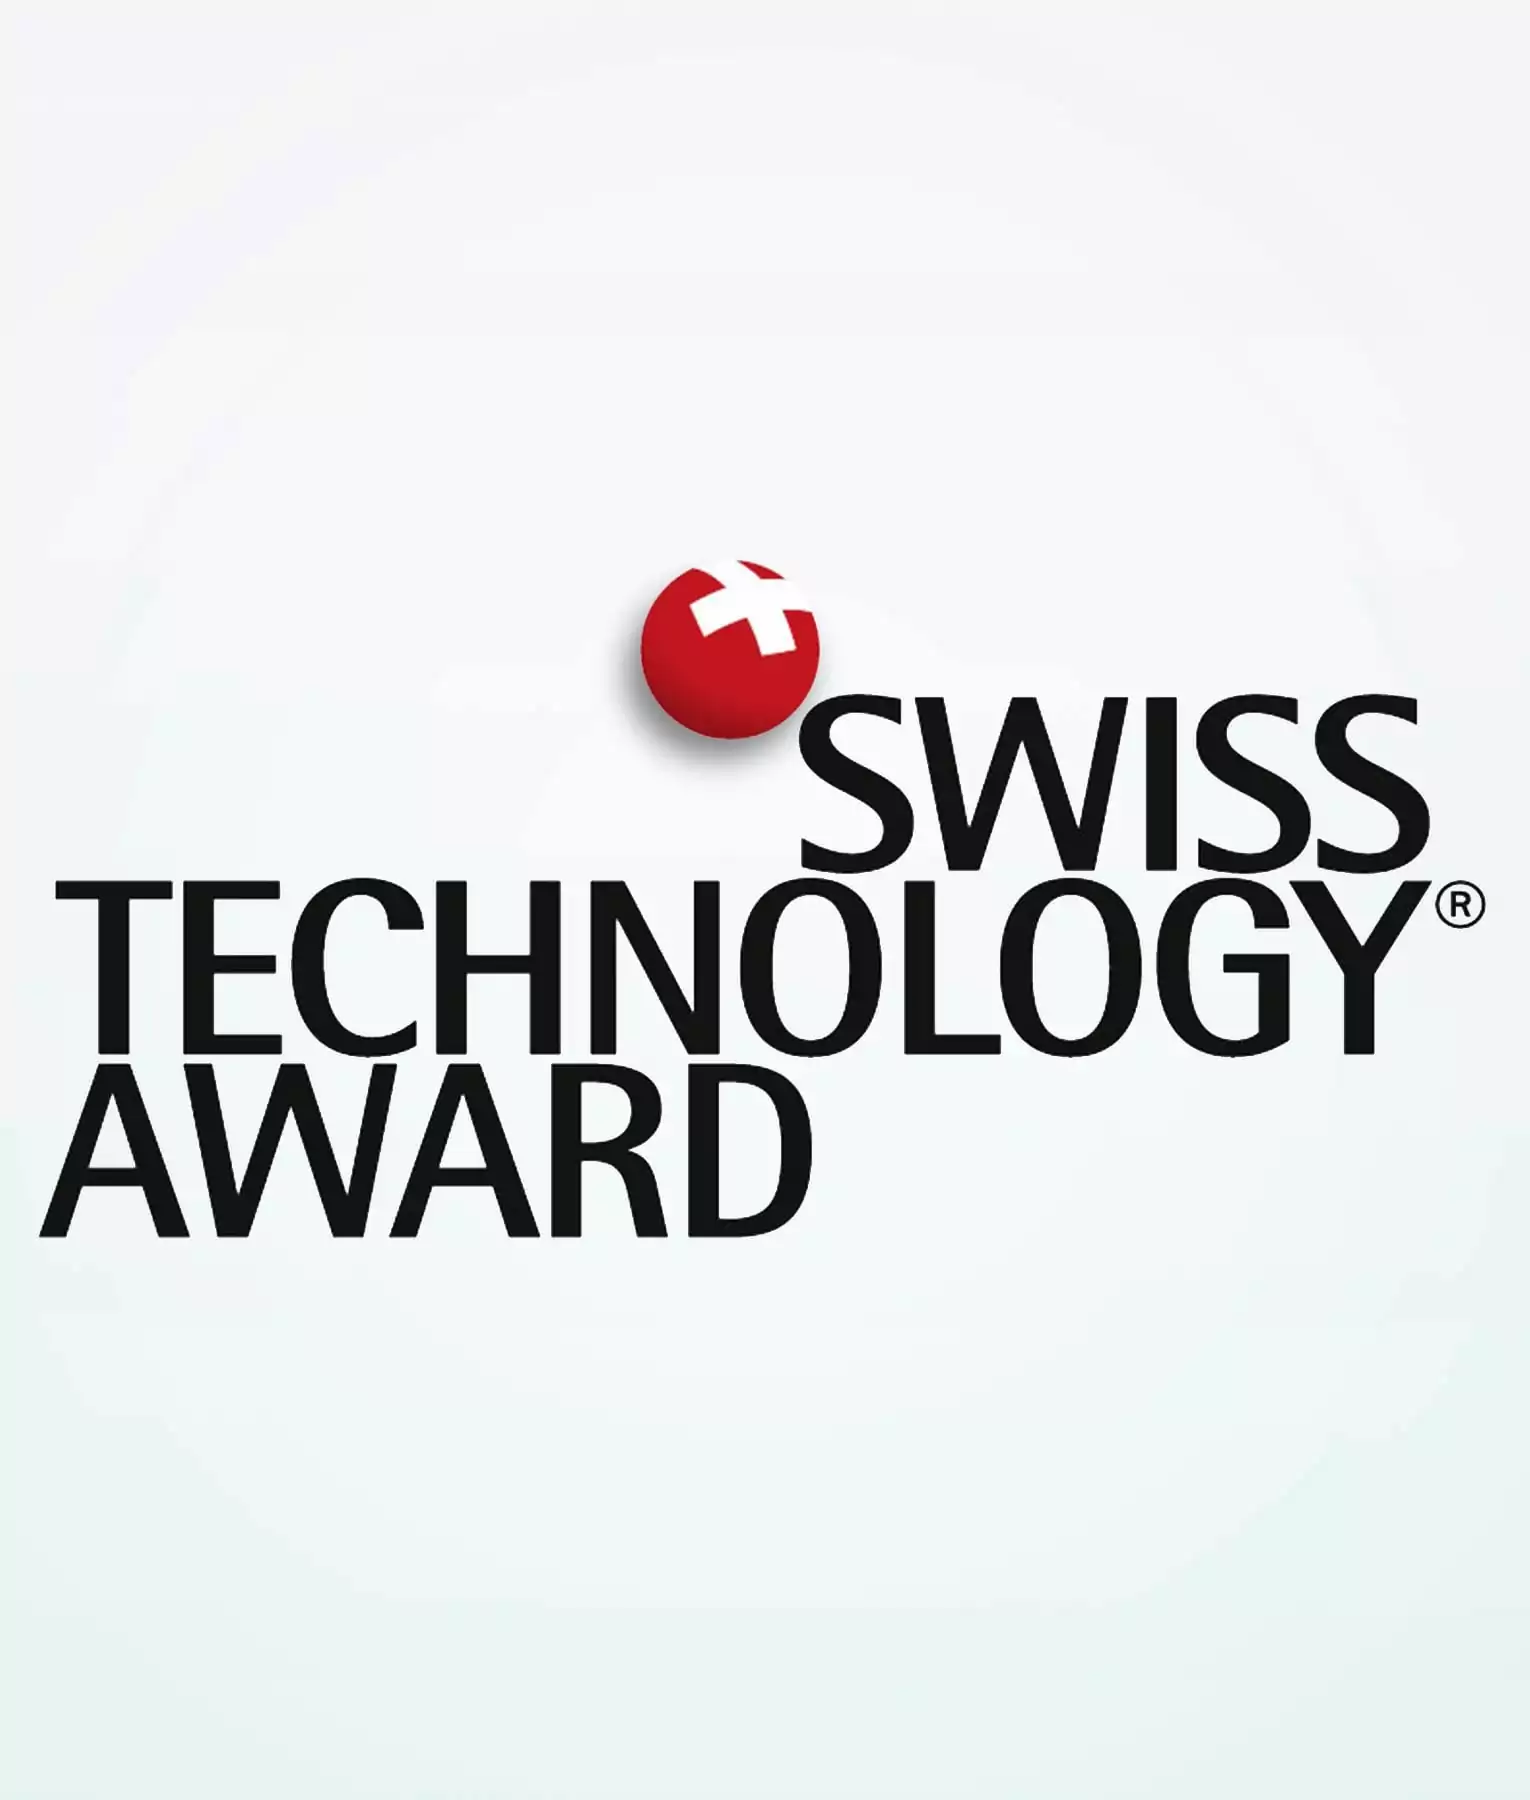 Premio de tecnología suizo